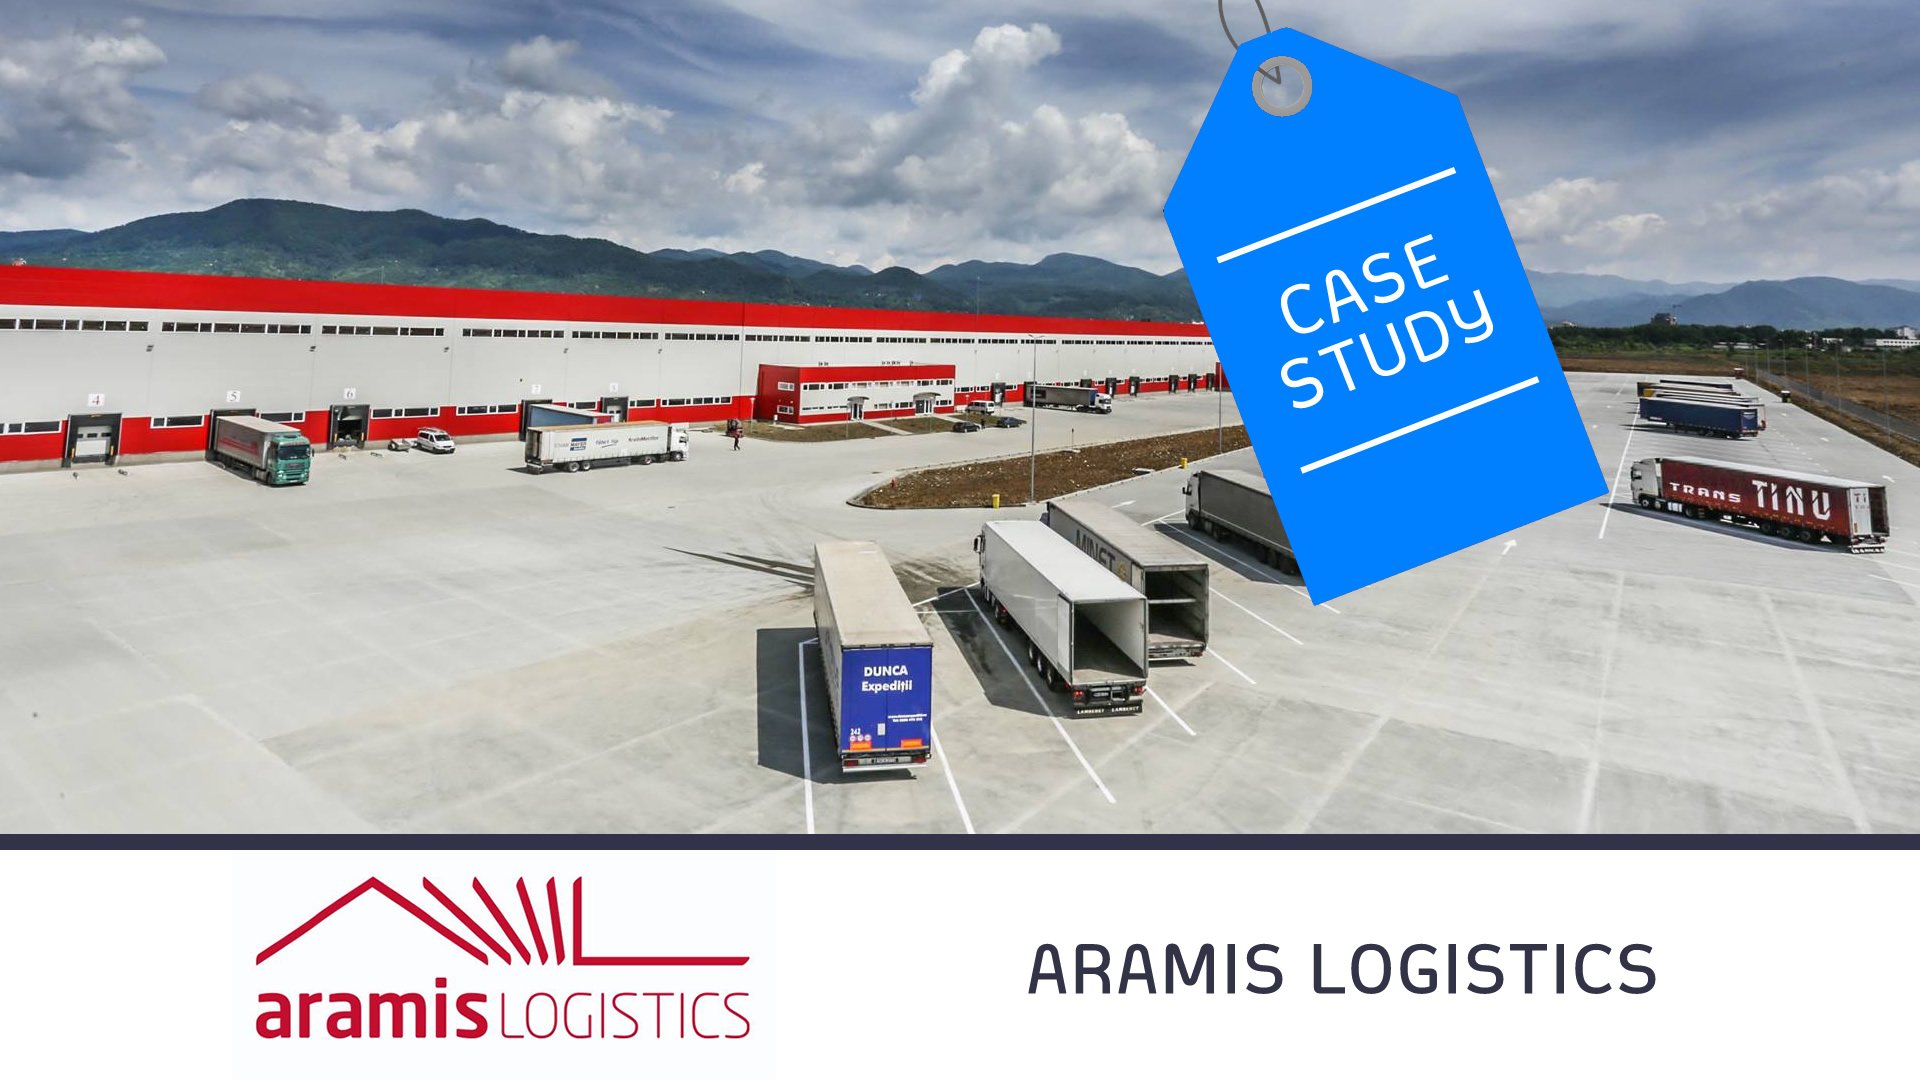 Aramis Logistics - Case Study